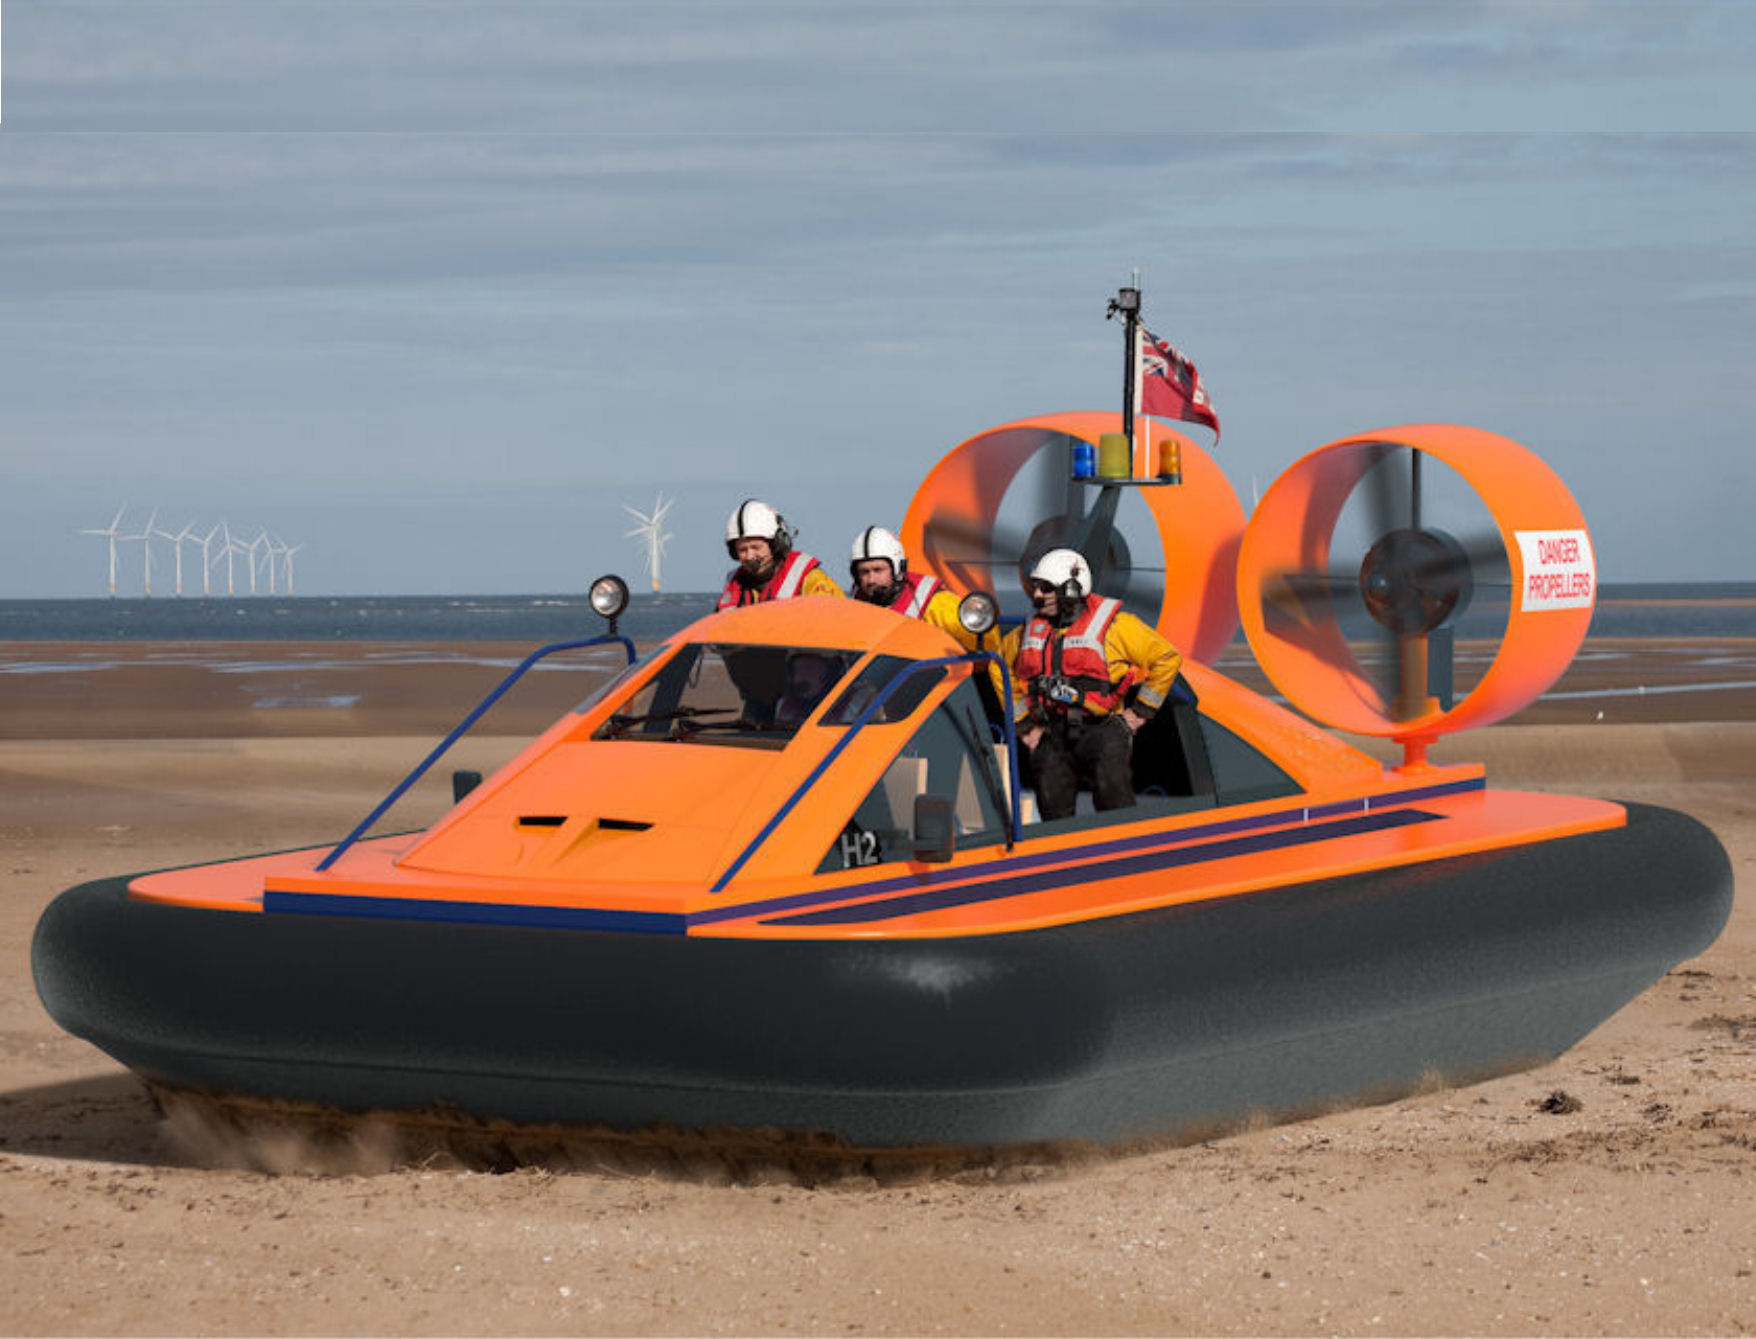 hovercraft for sale melbourne